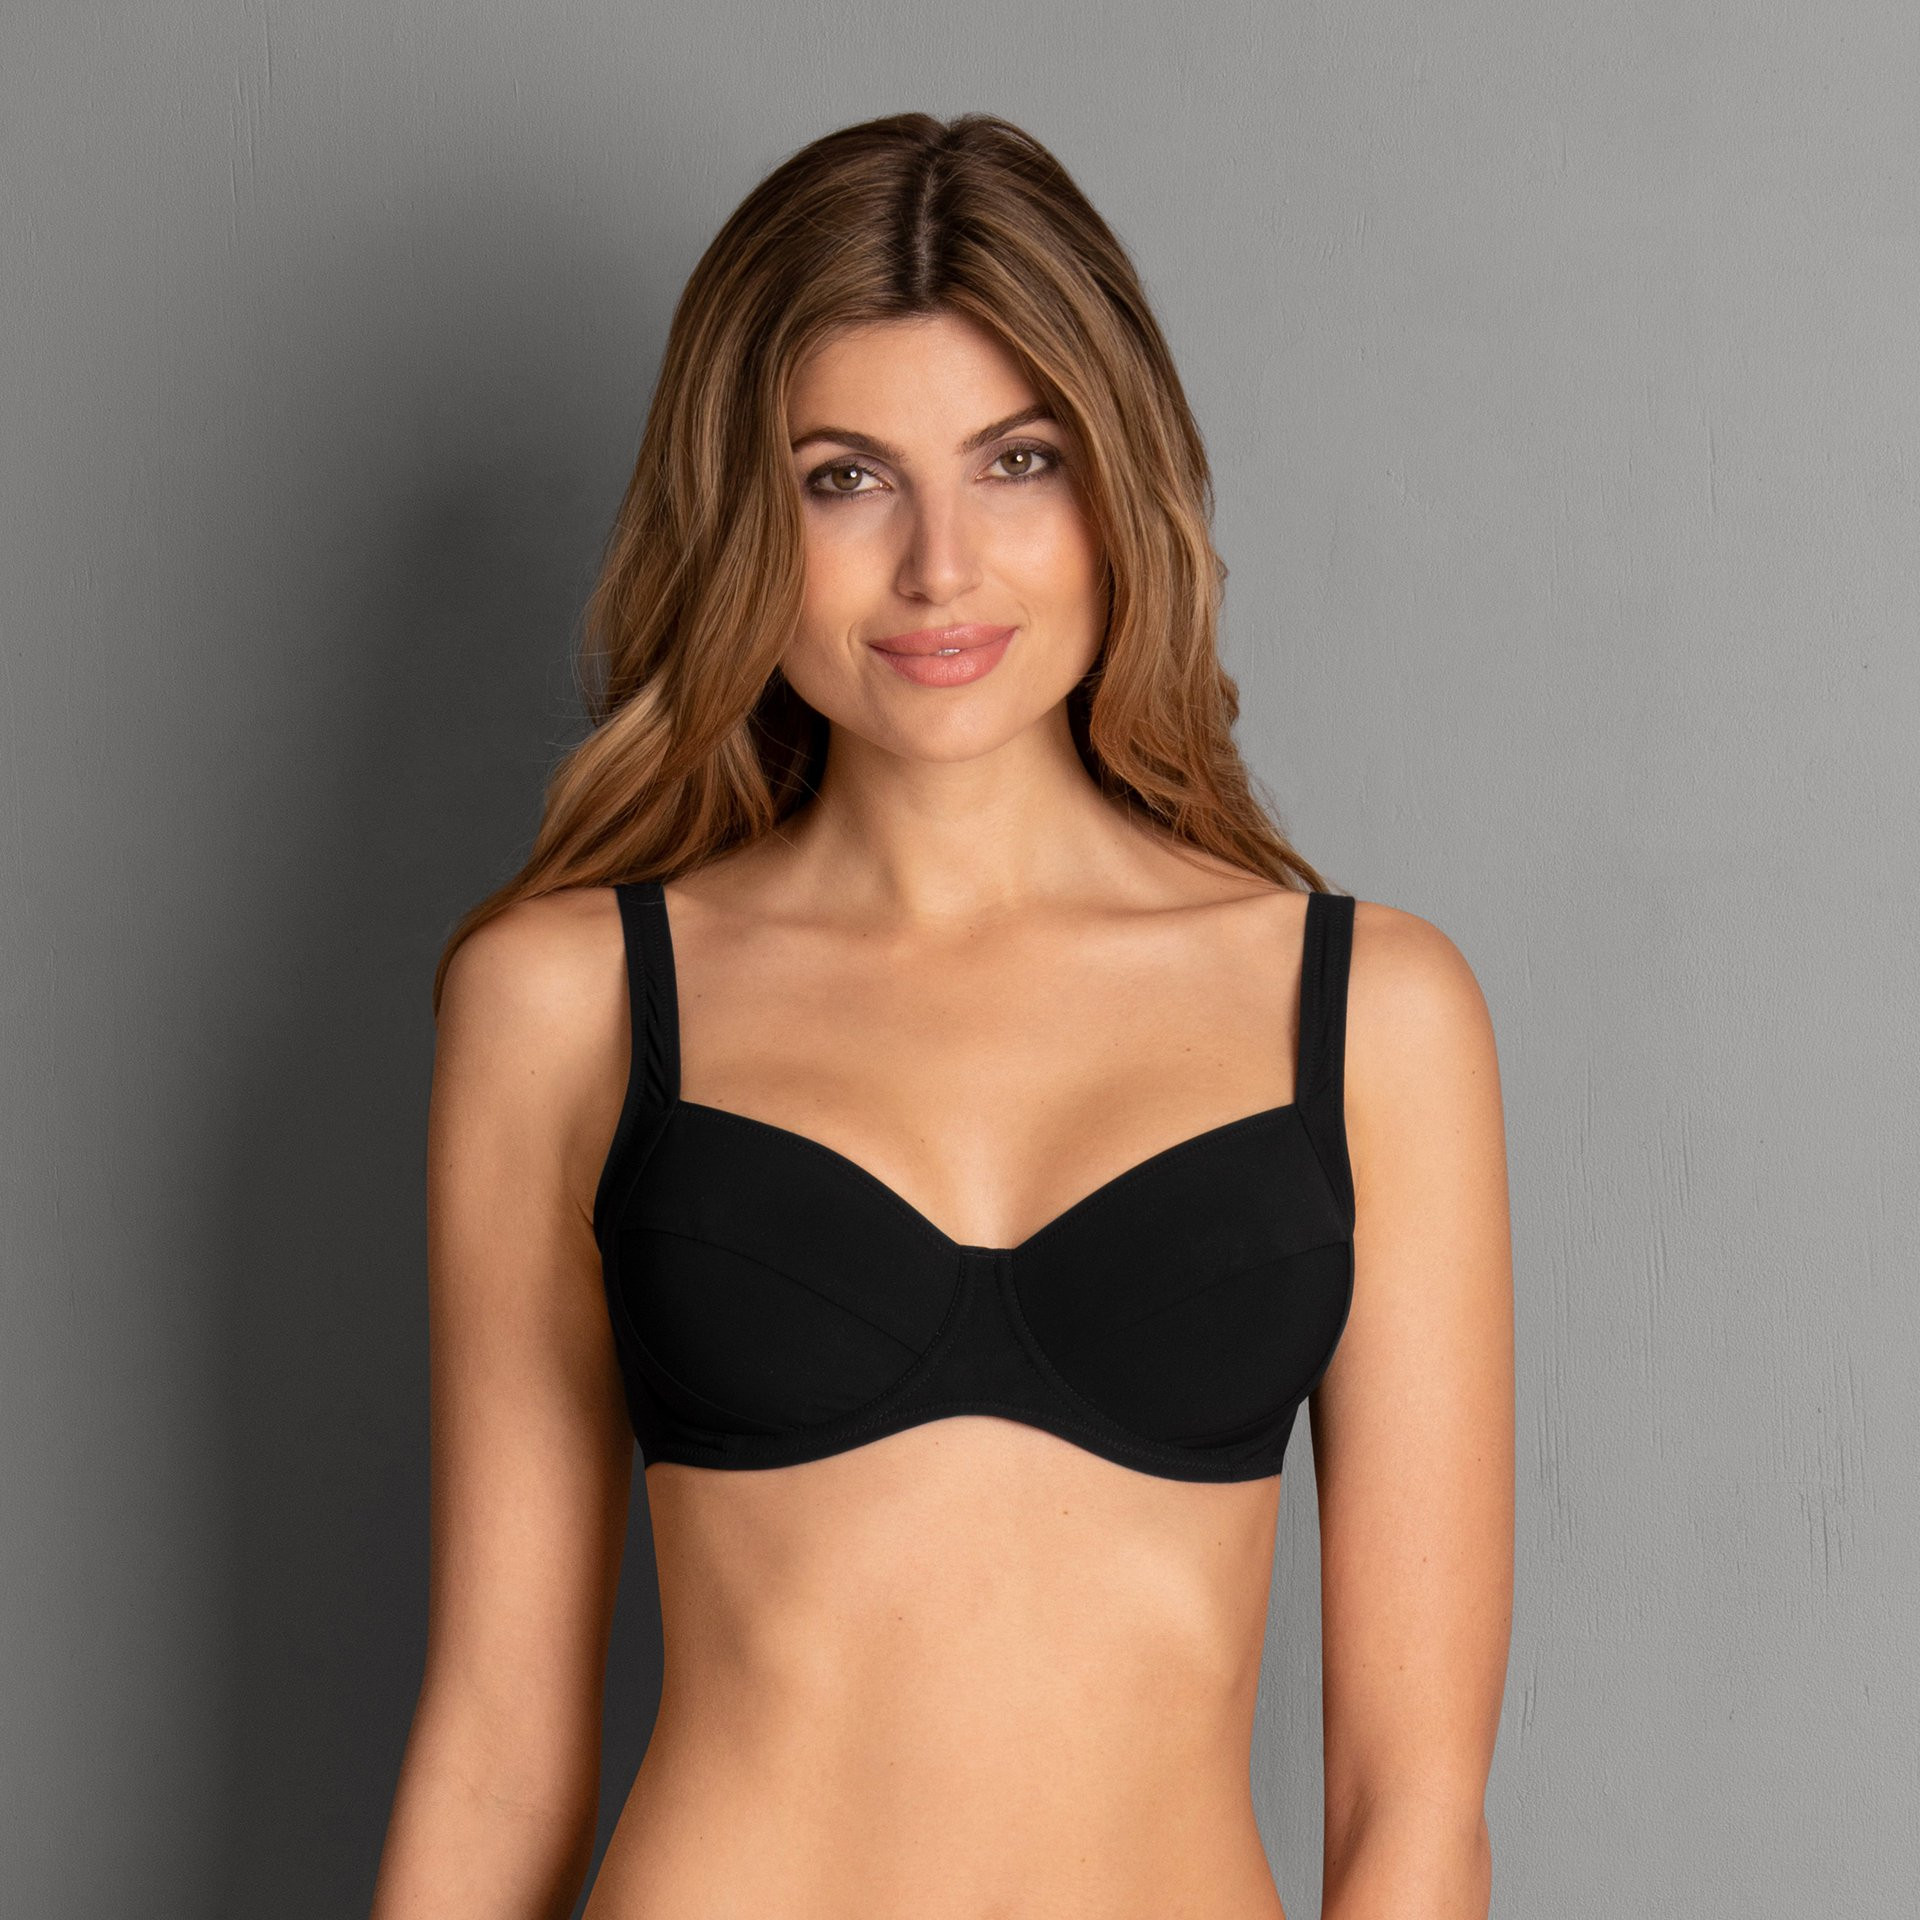 Style Sibel Top Bikini - horní díl 8730-1 černá - RosaFaia 001 černá 42G